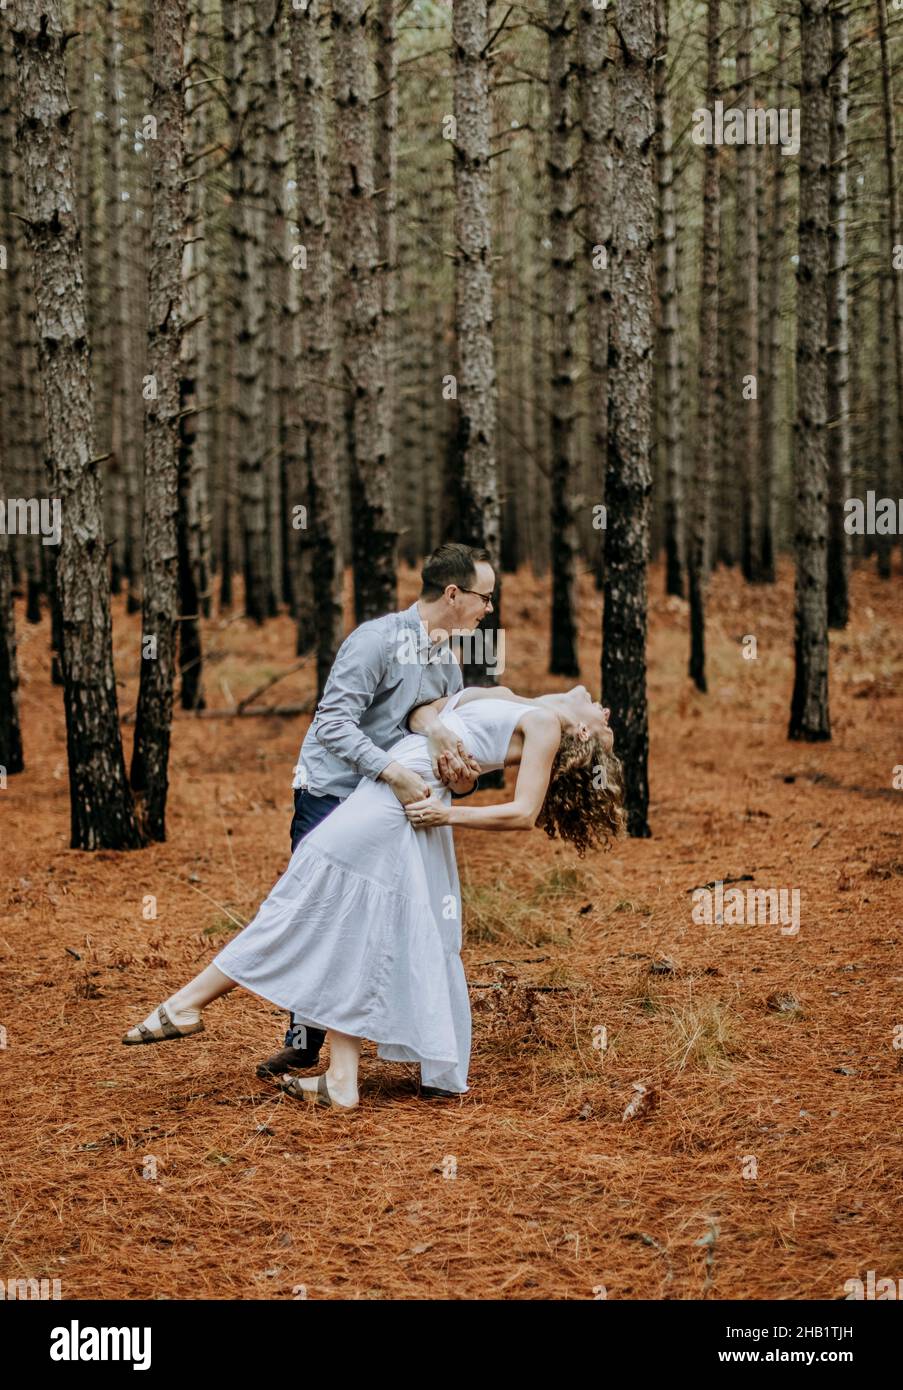 L'homme danse et plonge la femme en robe blanche dans la forêt de pins, Michigan Banque D'Images